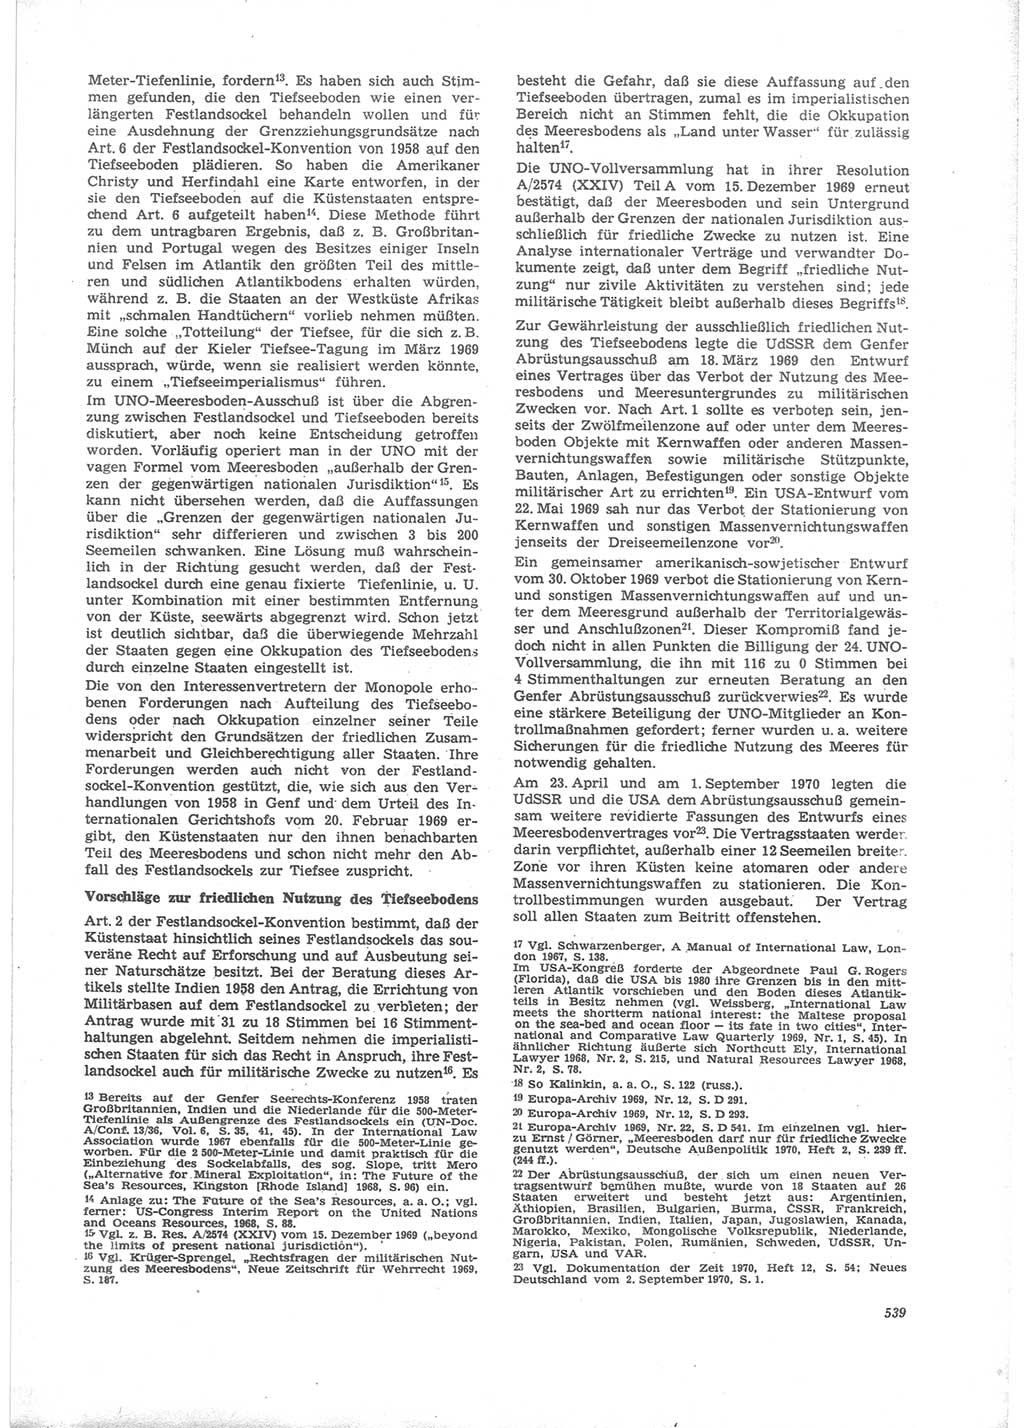 Neue Justiz (NJ), Zeitschrift für Recht und Rechtswissenschaft [Deutsche Demokratische Republik (DDR)], 24. Jahrgang 1970, Seite 539 (NJ DDR 1970, S. 539)